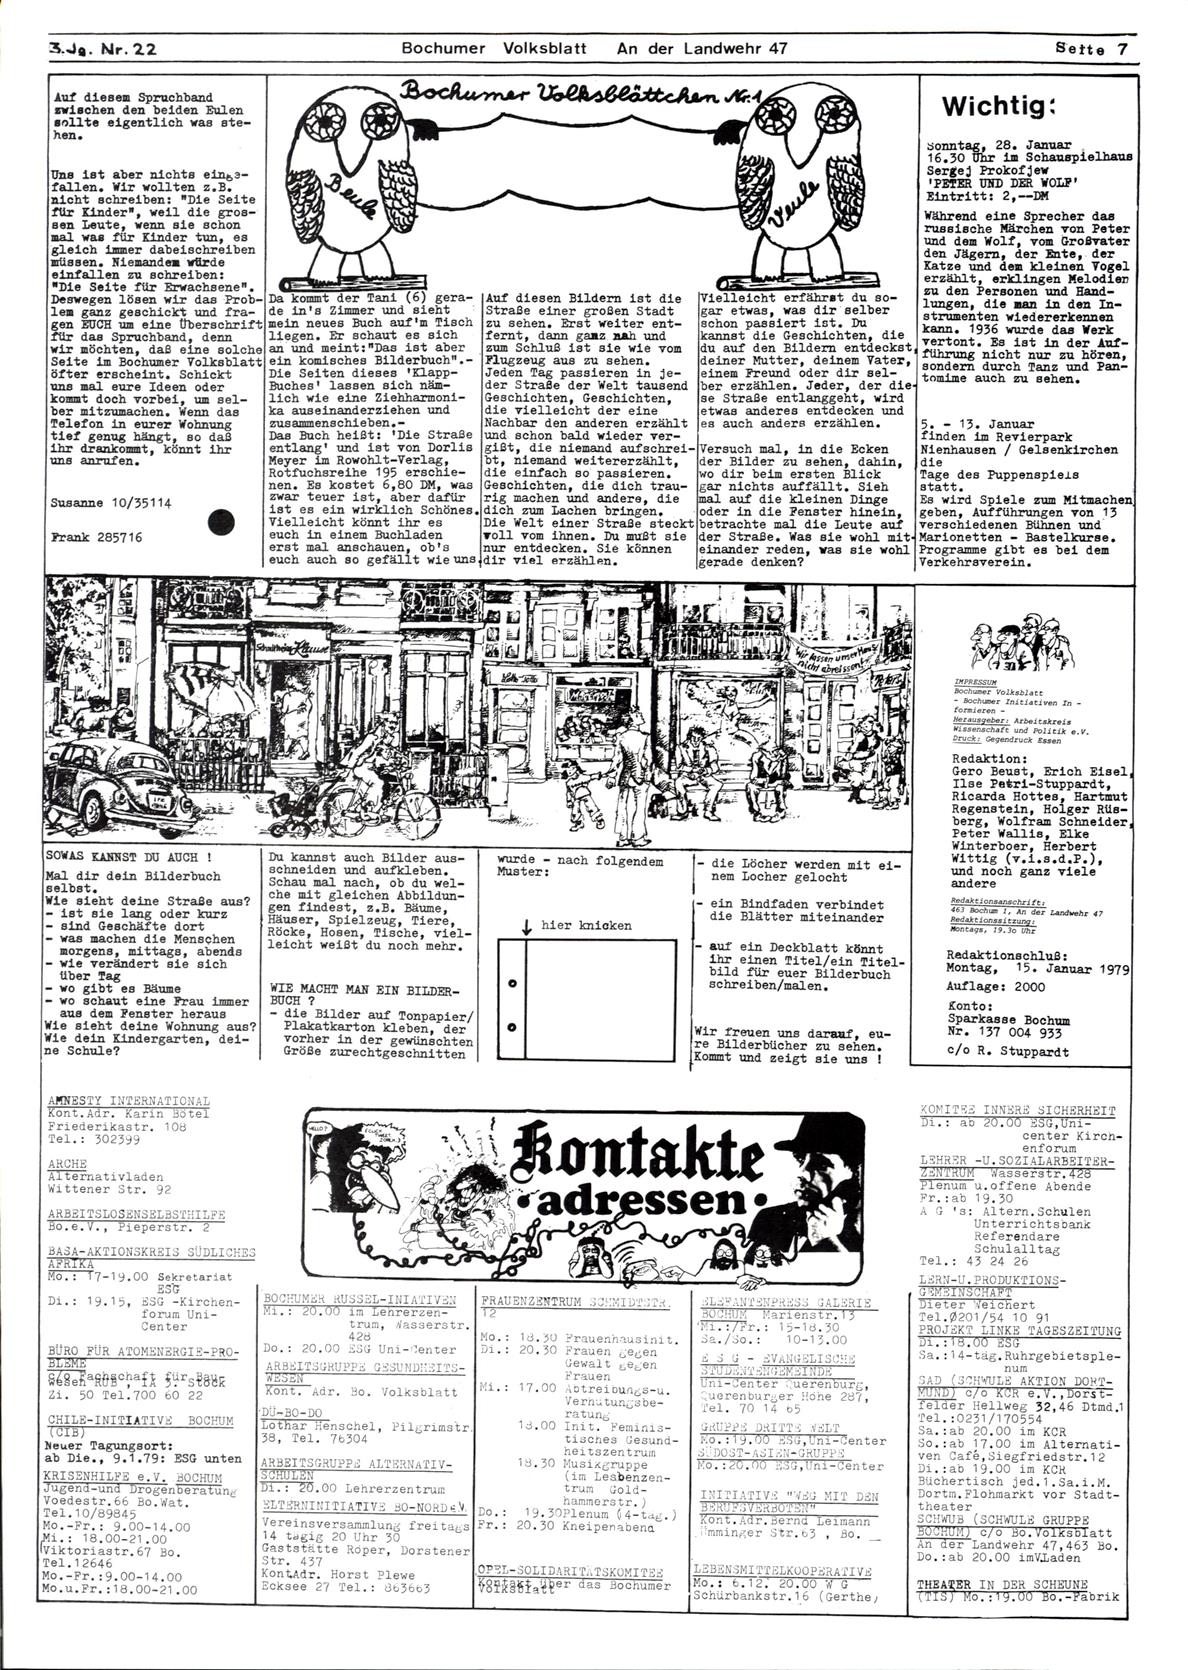 Bochum_Volksblatt_19790100_22_07